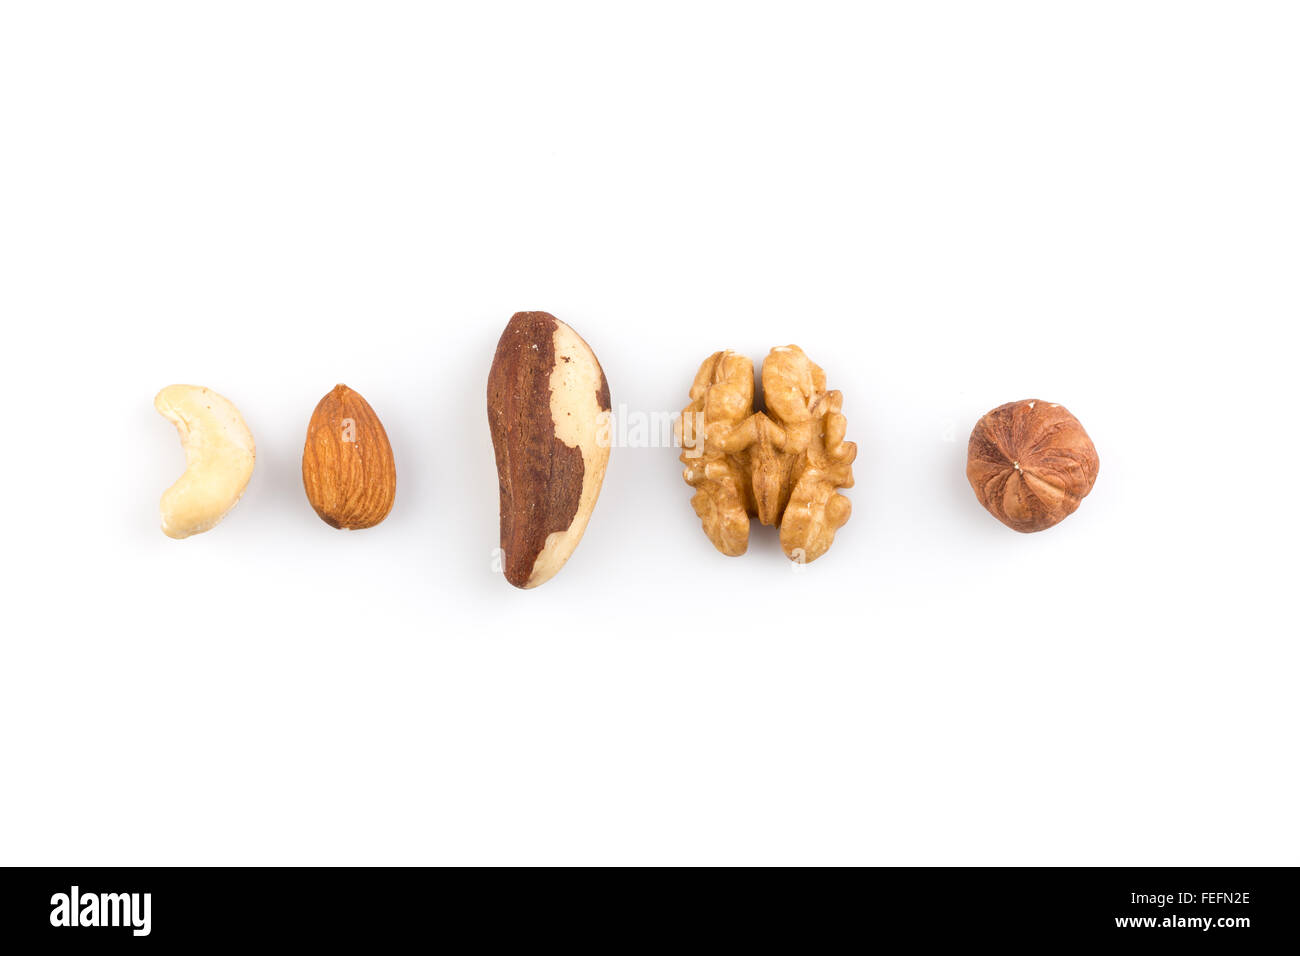 Erdnüsse, Walnüsse, Mandeln, Haselnüsse, Brasilien und Cashew Nüssen vermischt Stockfoto